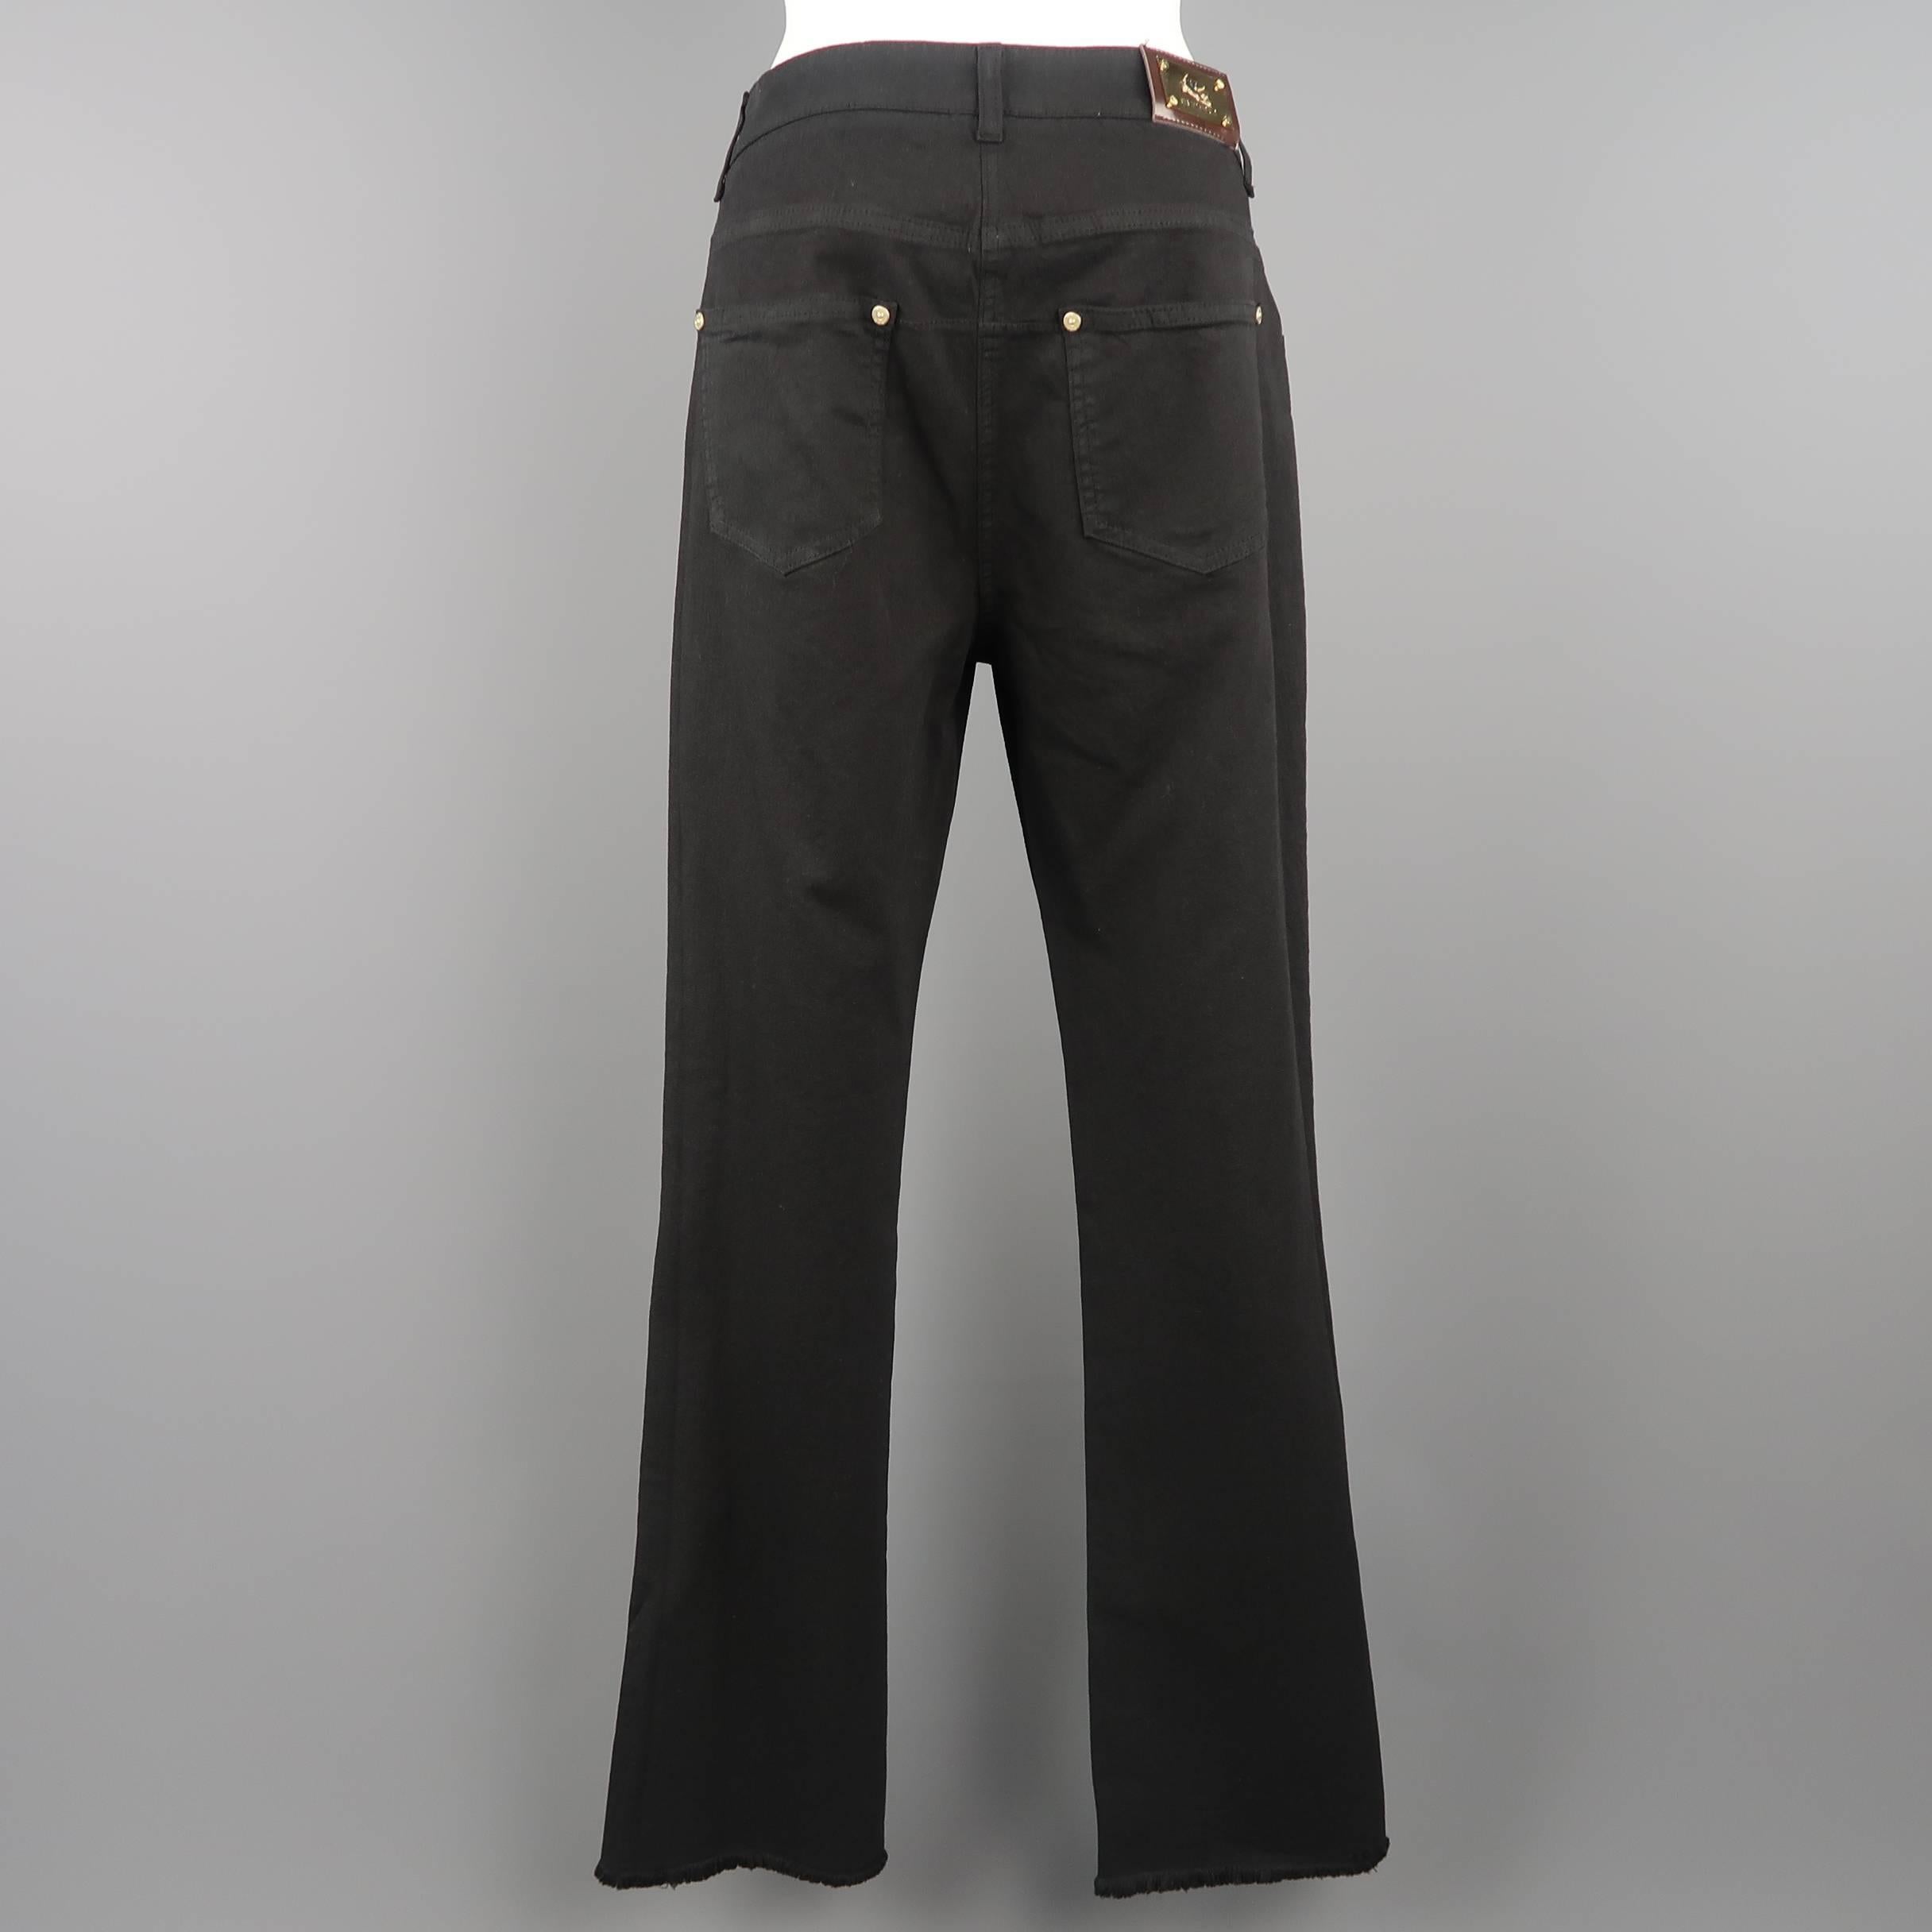 ETRO Size 29 Black Stretch Cotton Floral Trim Boot Cut Jeans 2